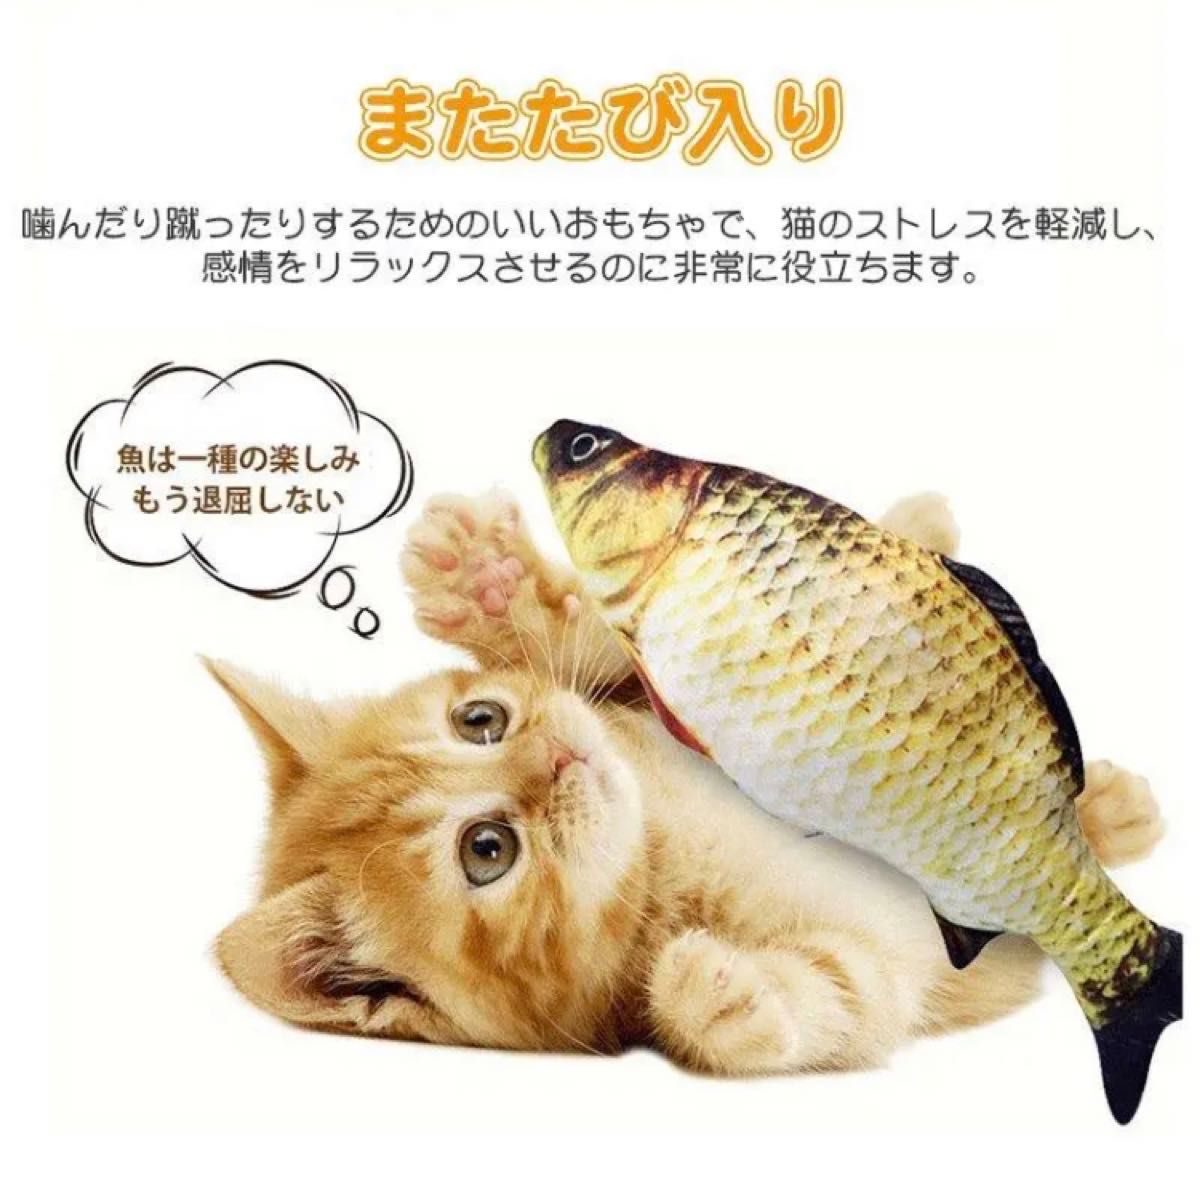 猫おもちゃ 電動魚 ぬいぐるみ 魚おもちゃ USB充電式 抱き枕 魚 ネコ